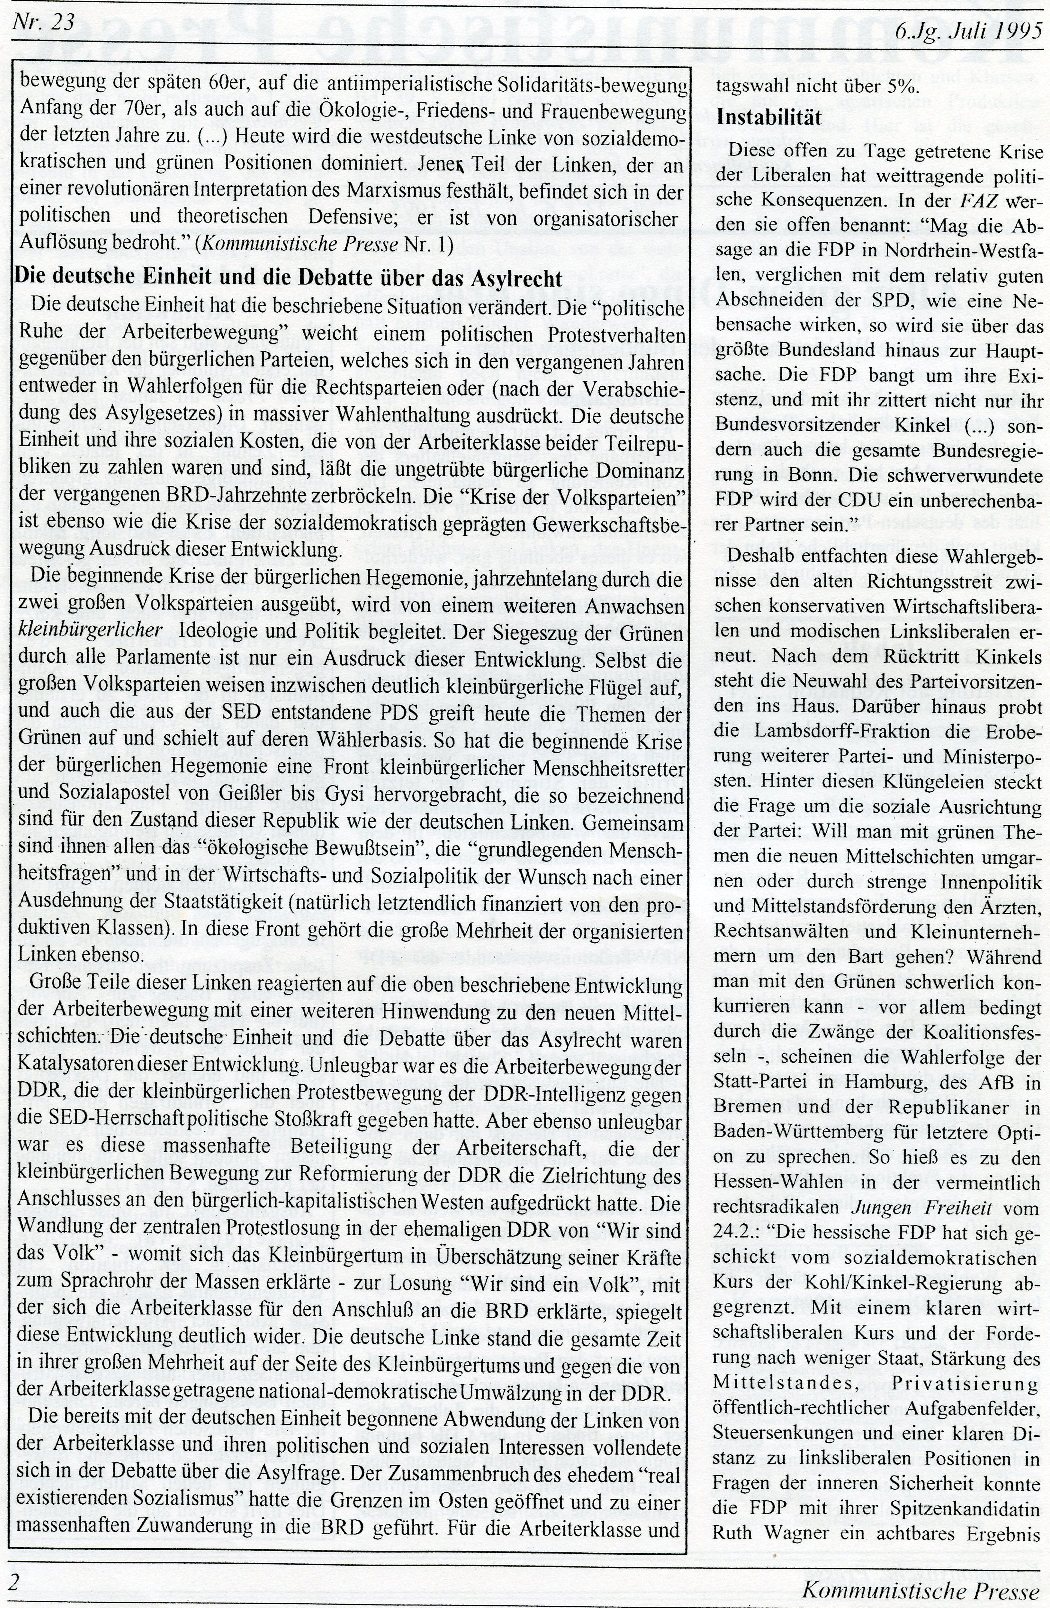 Gelsenkirchen_Kommunistische_Presse_1995_23_002